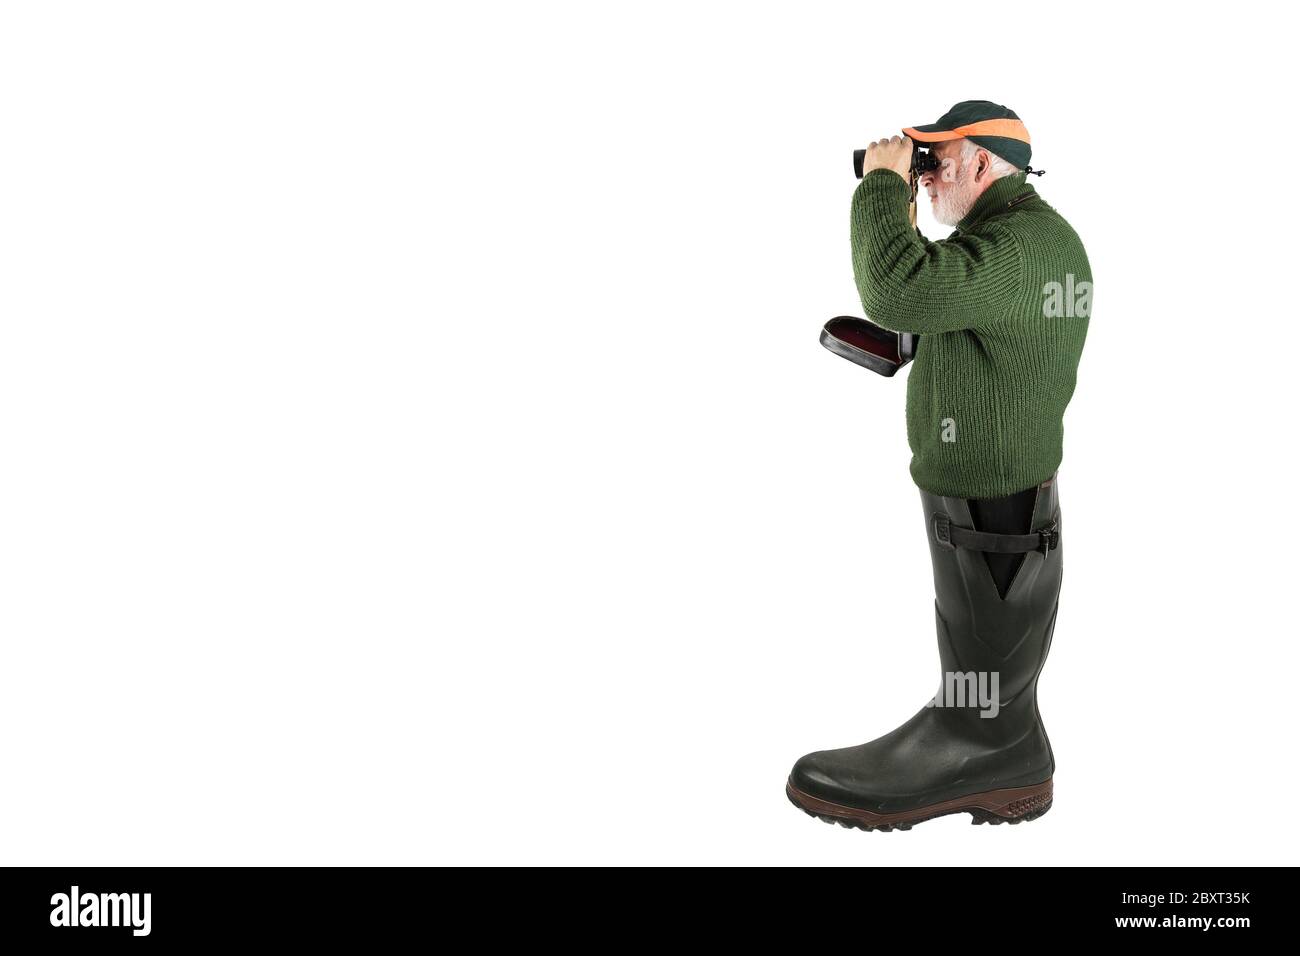 Un chasseur se tient dans une grande chaussure en caoutchouc et regarde à travers ses jumelles. Banque D'Images